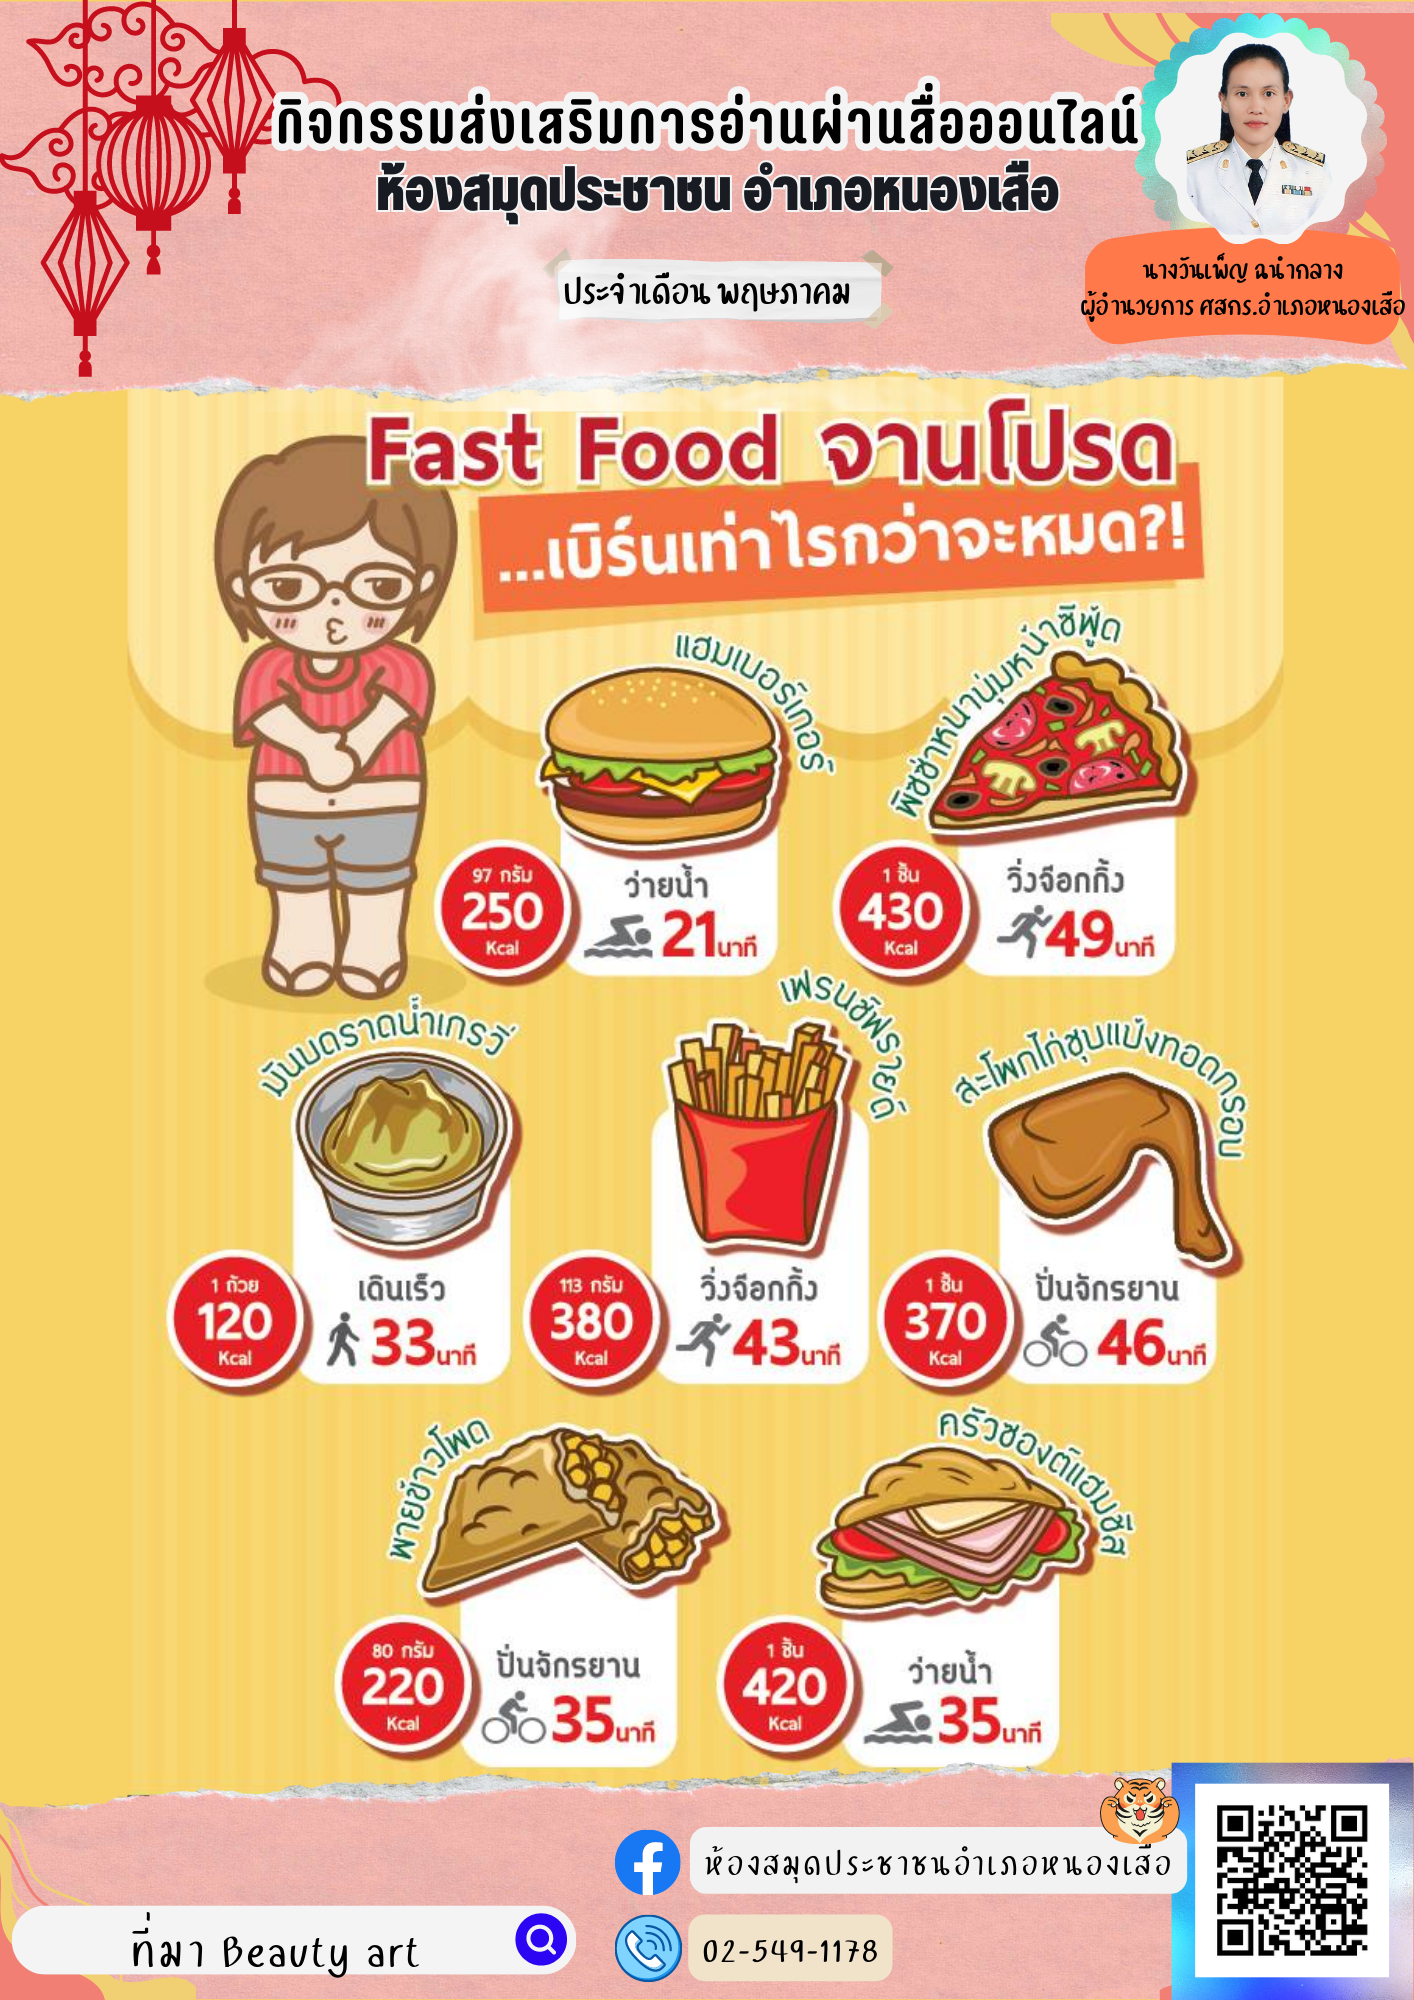 กิจกรรมส่งเสริมการอ่านผ่านสื่ออนไลน์ประจำวันที่ 29 พฤษภาคม 2566  2566 "Fast food อาหารจานโปรด เบิร์นเท่าไรกว่าจะหมด"